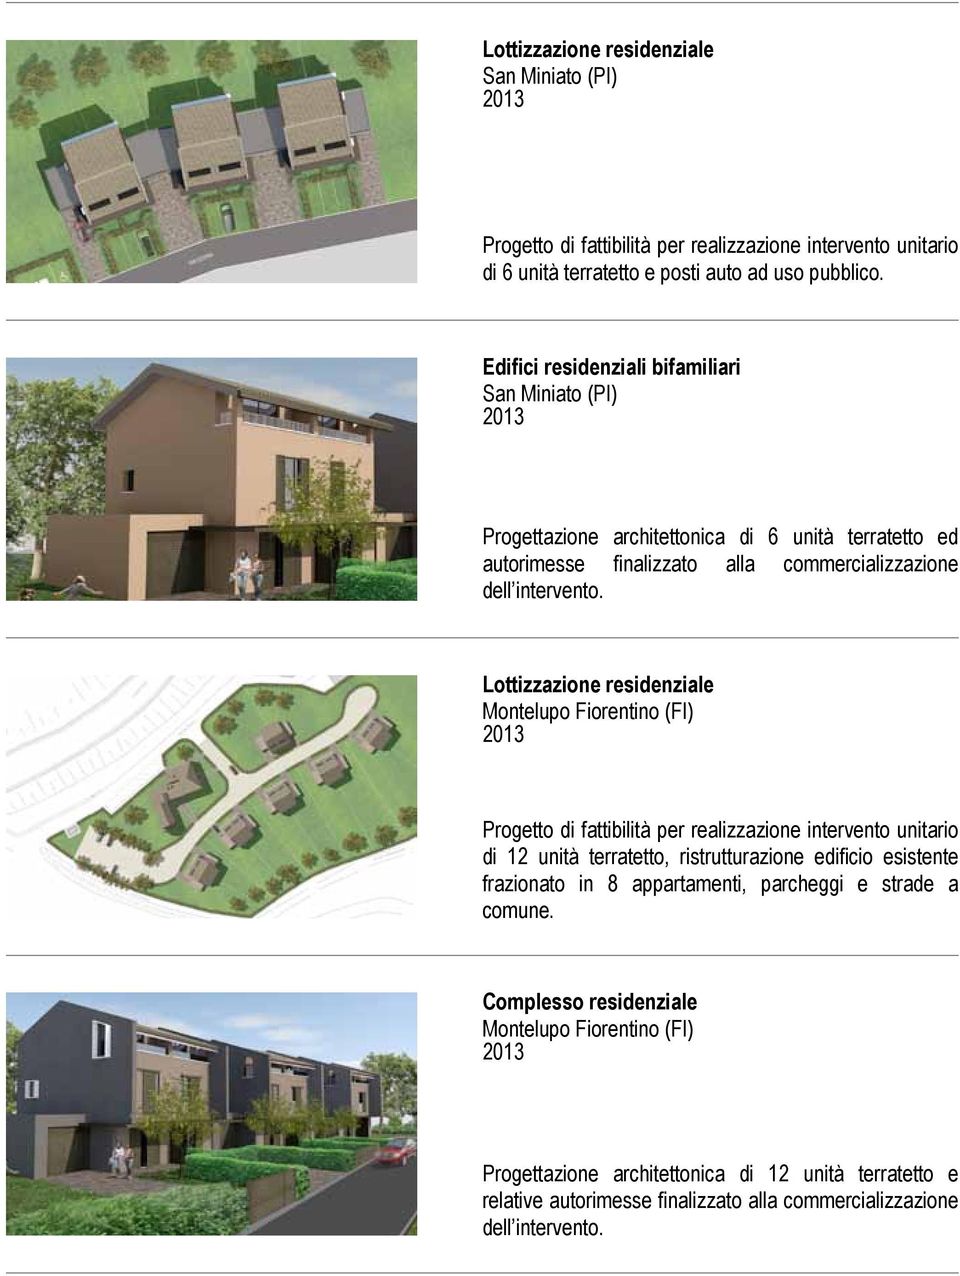 Lottizzazione residenziale Montelupo Fiorentino (FI) Progetto di fattibilità per realizzazione intervento unitario di 12 unità terratetto, ristrutturazione edificio esistente